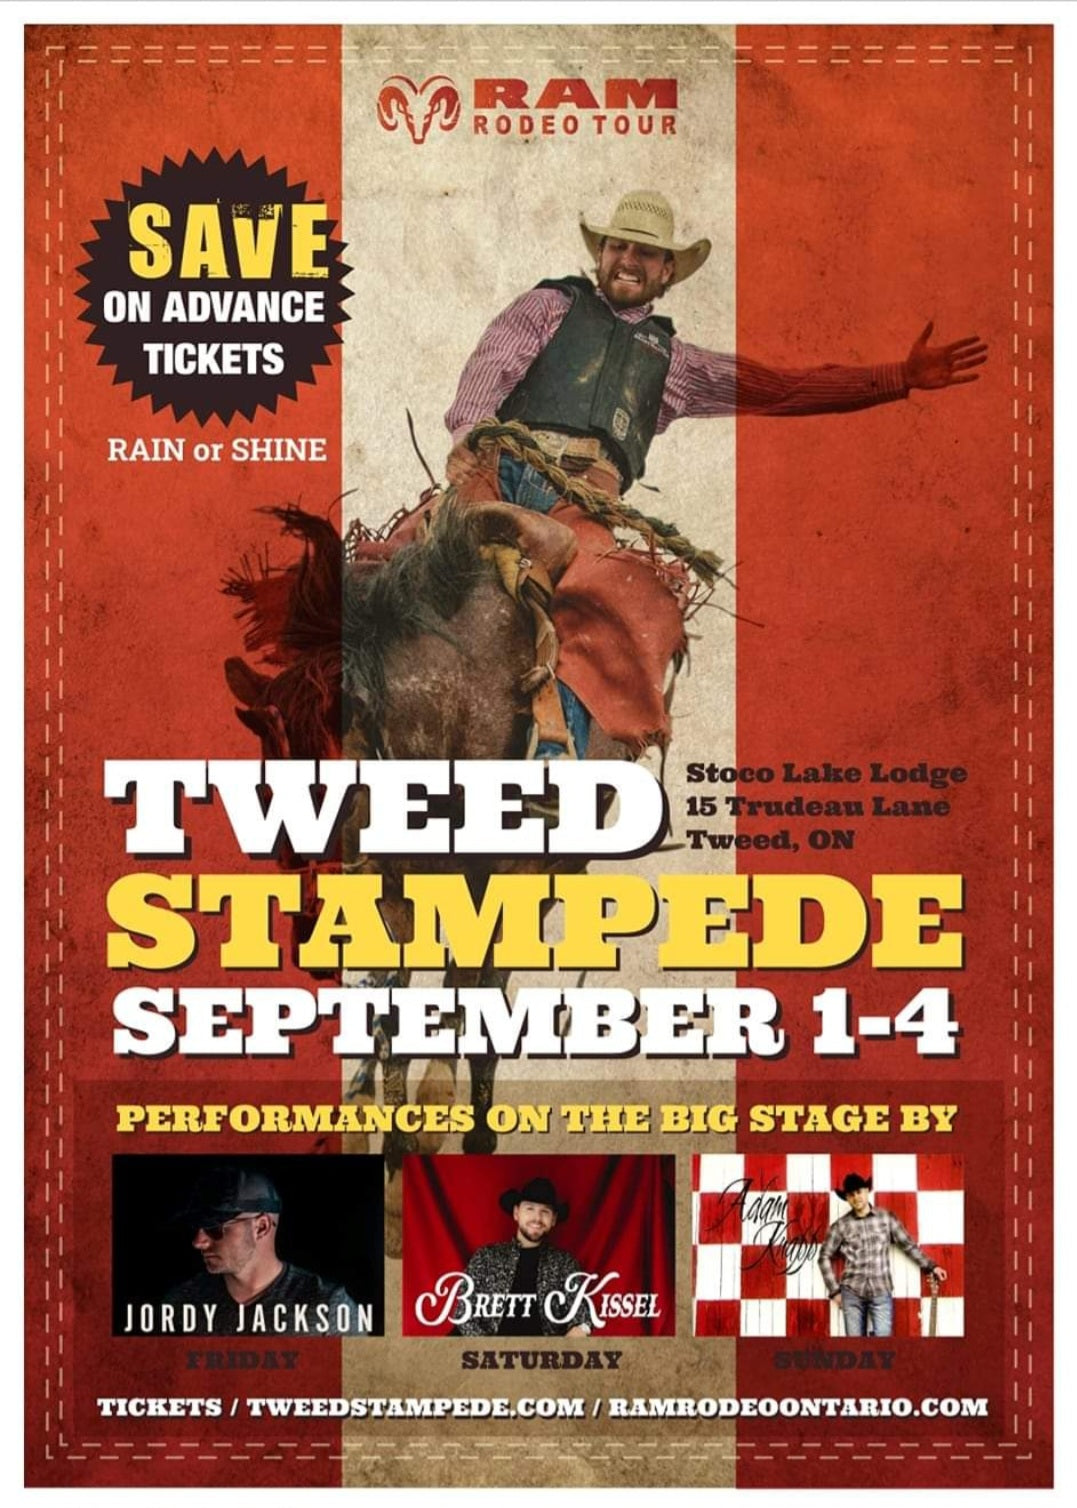 Tweed Stampede & Jamboree RAM Rodeo Tour